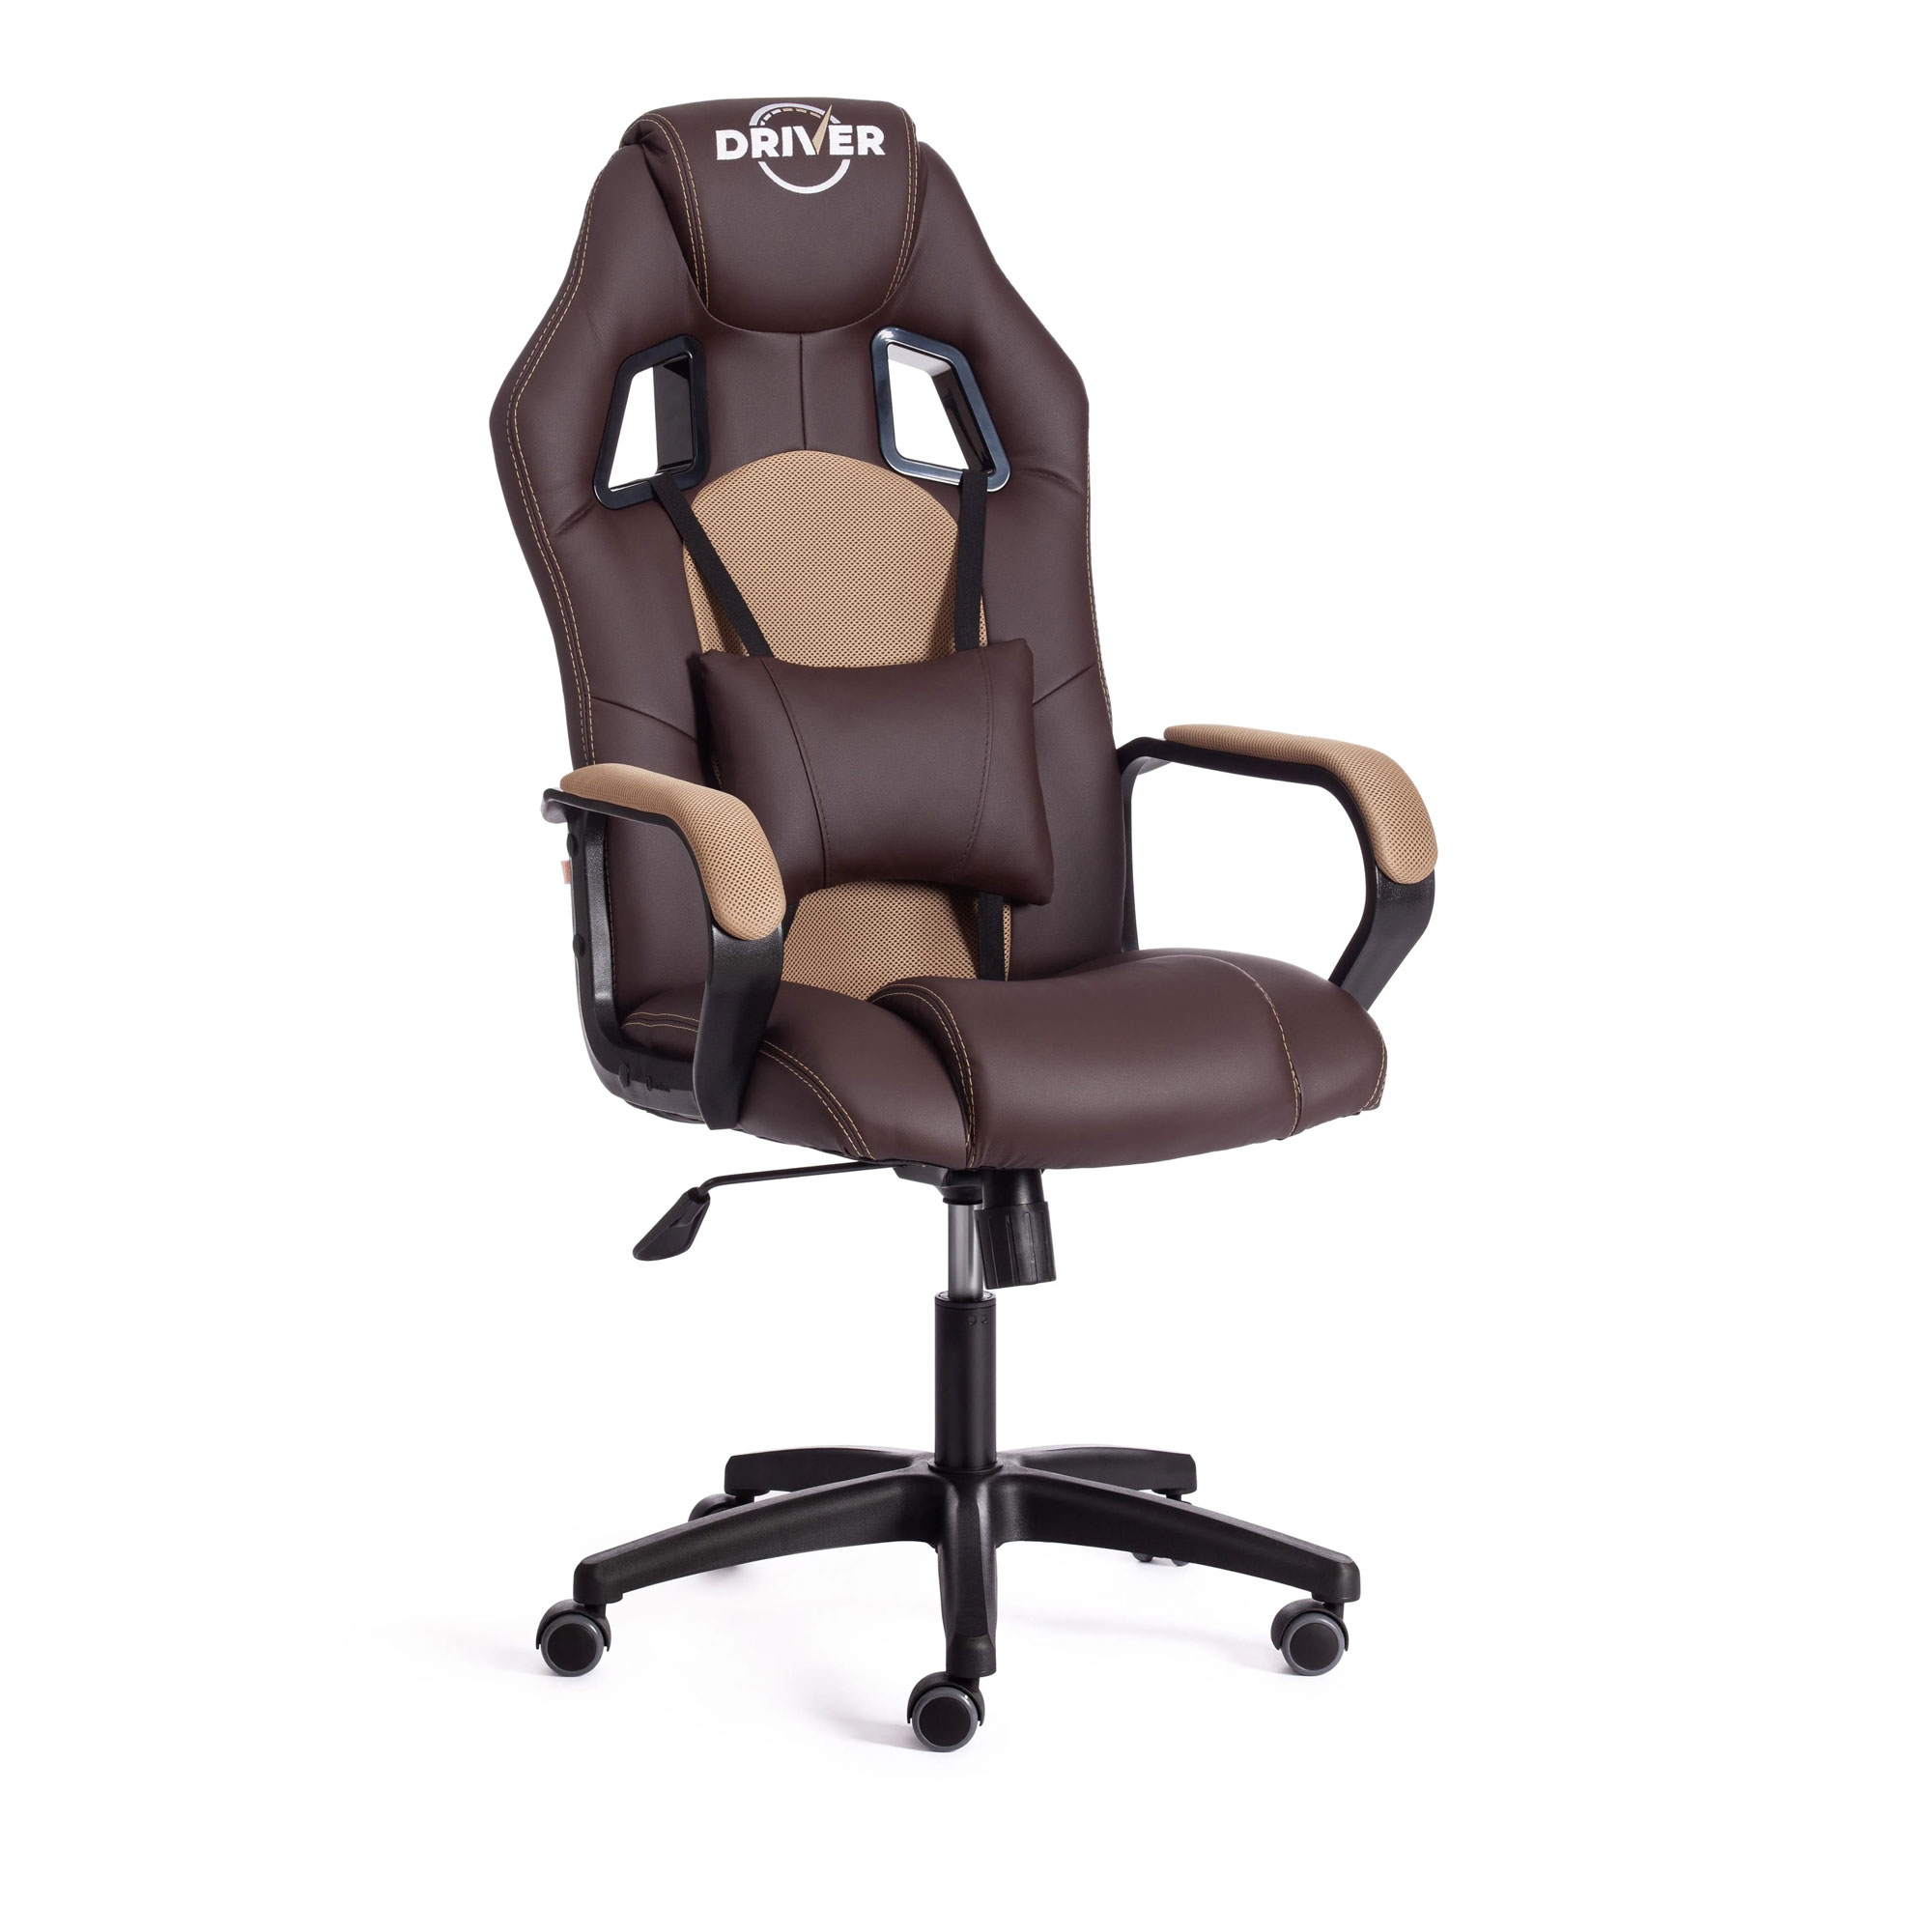 Кресло компьютерное TC Driver искусственная кожа коричневое с бронзовым 55х49х126 см кресло компьютерное tc driver искусственная кожа чёрное с бордовым 55х49х126 см